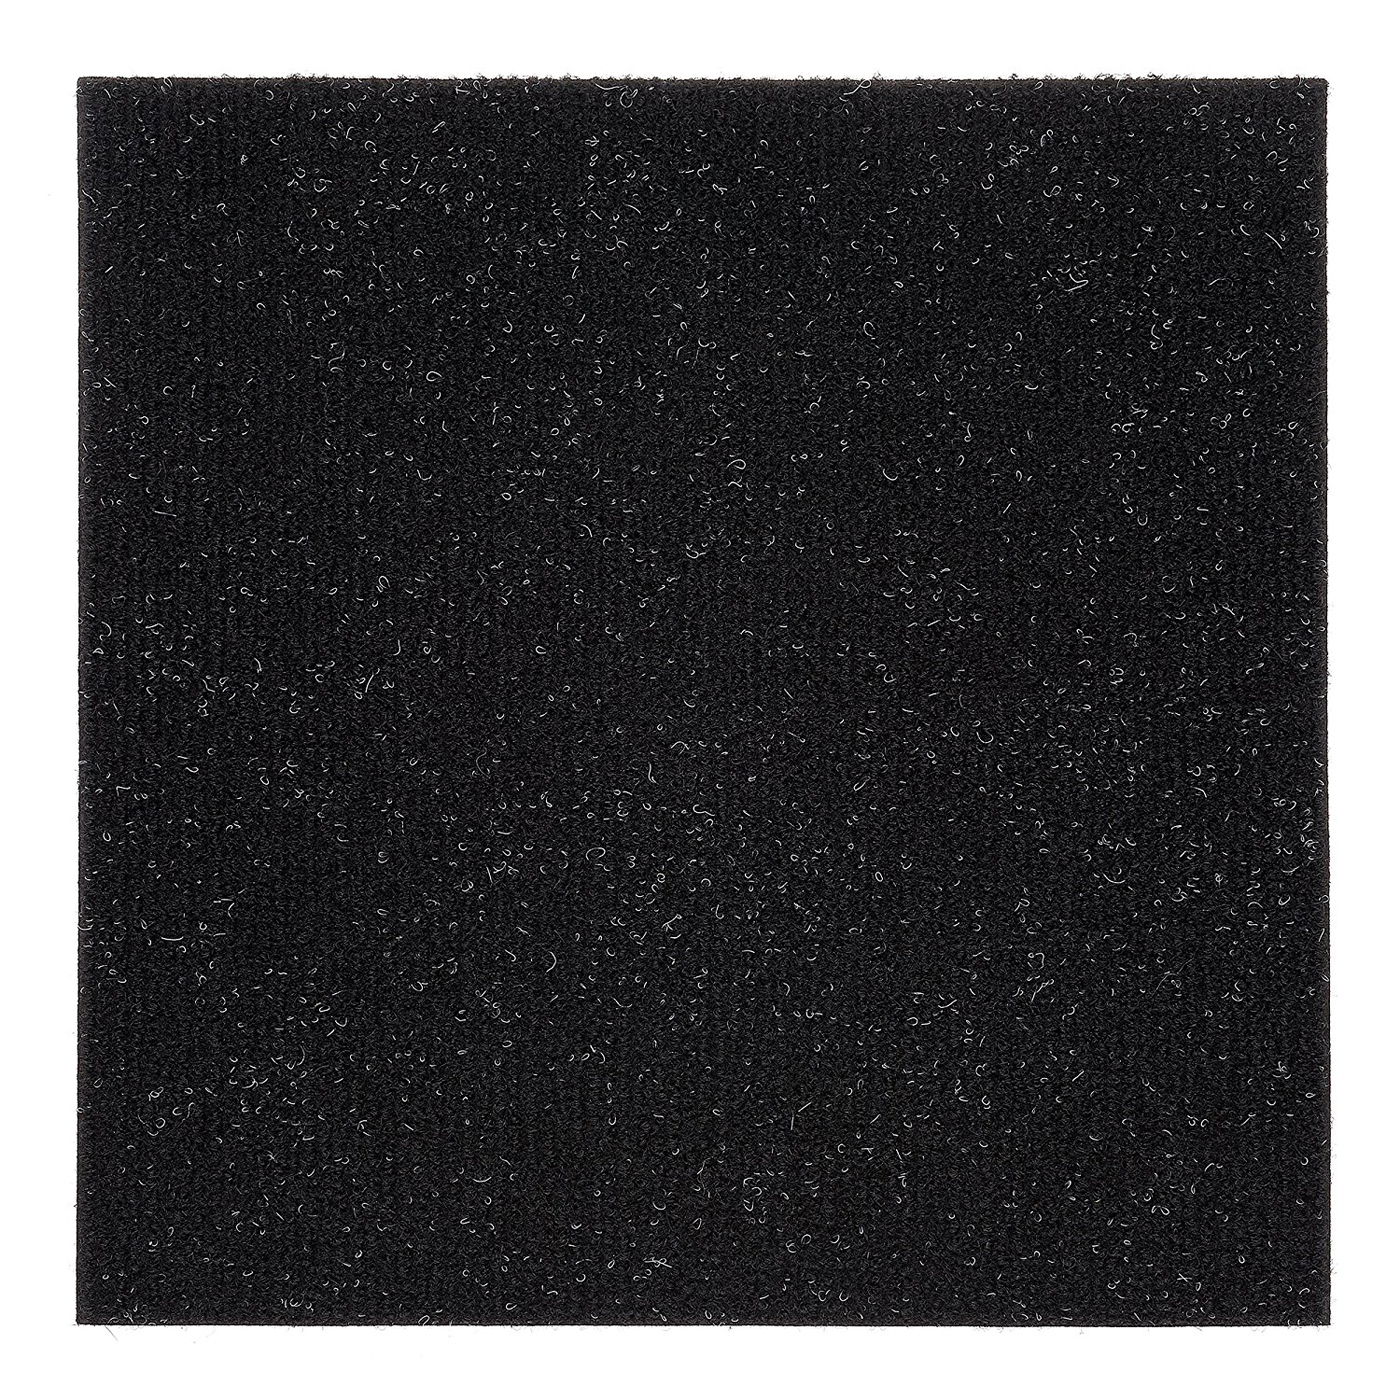 PowerSellerUSA Self-Adhesive Luxury DIY Peel & Stick Carpet Floor Tiles, 12" x 12", 1-Pack 12 Tiles, Black Onyx